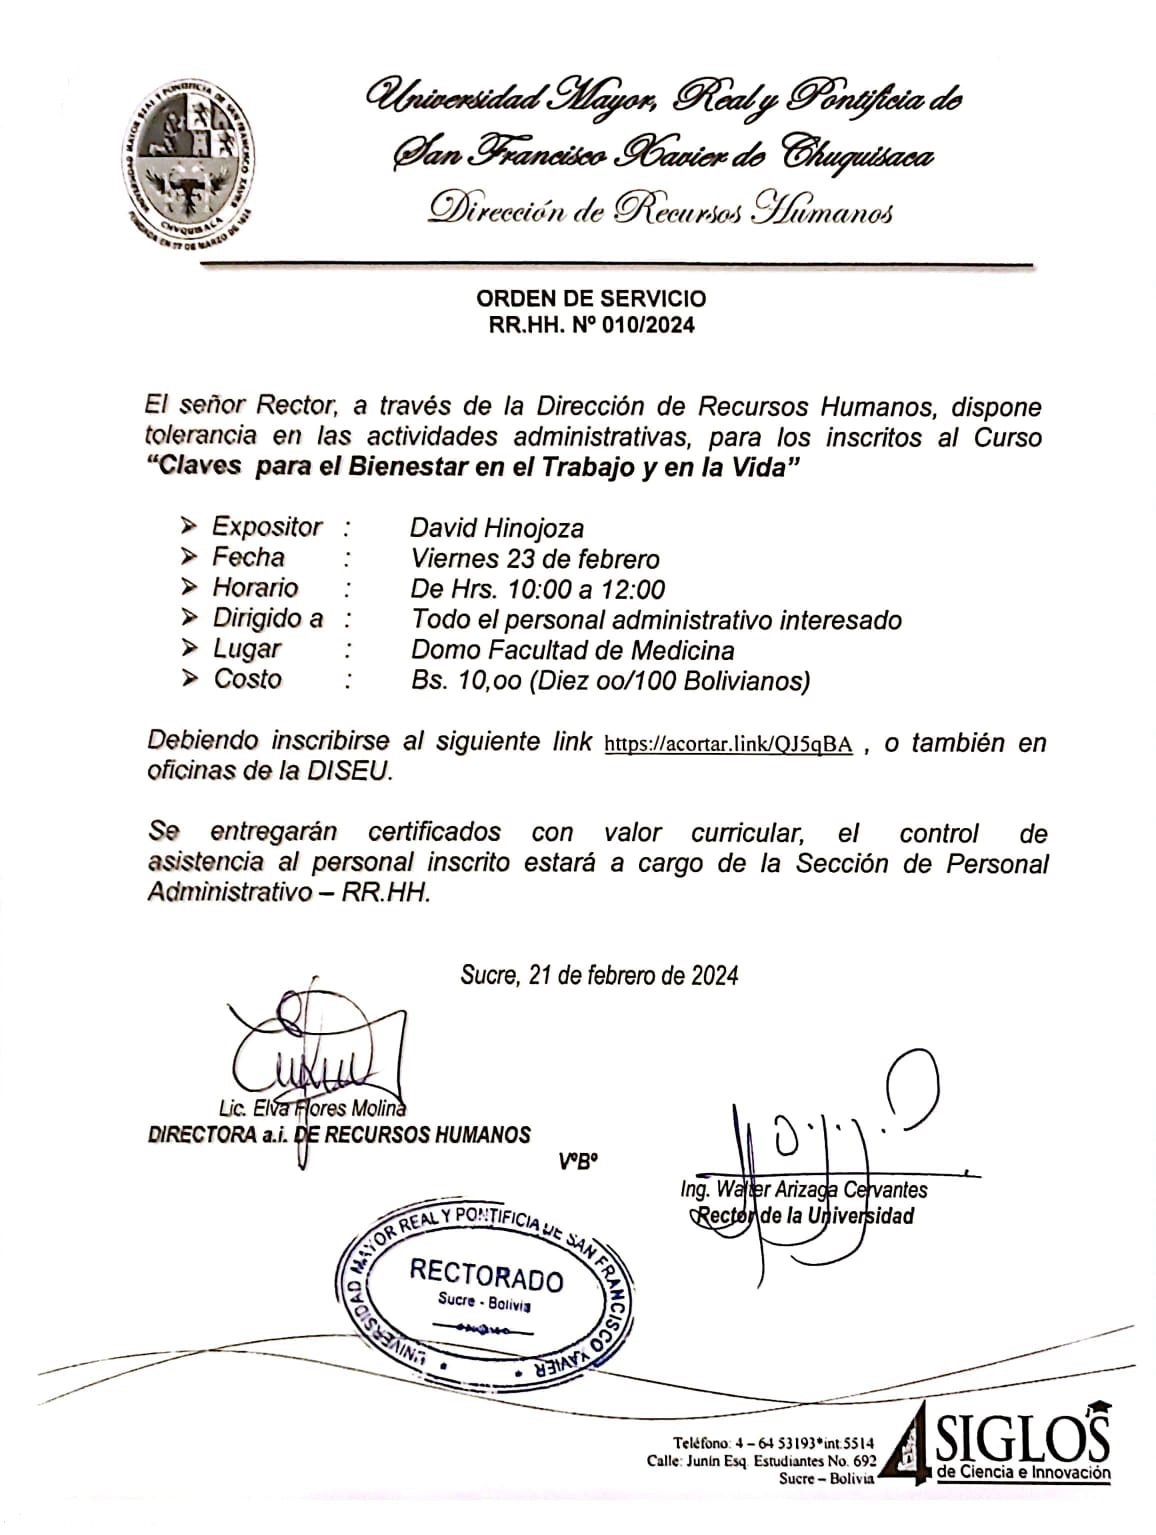 ORDEN DE SERVICIO RR.HH. Nº 010/2024, TOLERANCIA EN ACTIVIDADES ADMINISTRATIVAS CURSO CLAVES PARA EL BIENESTAR.